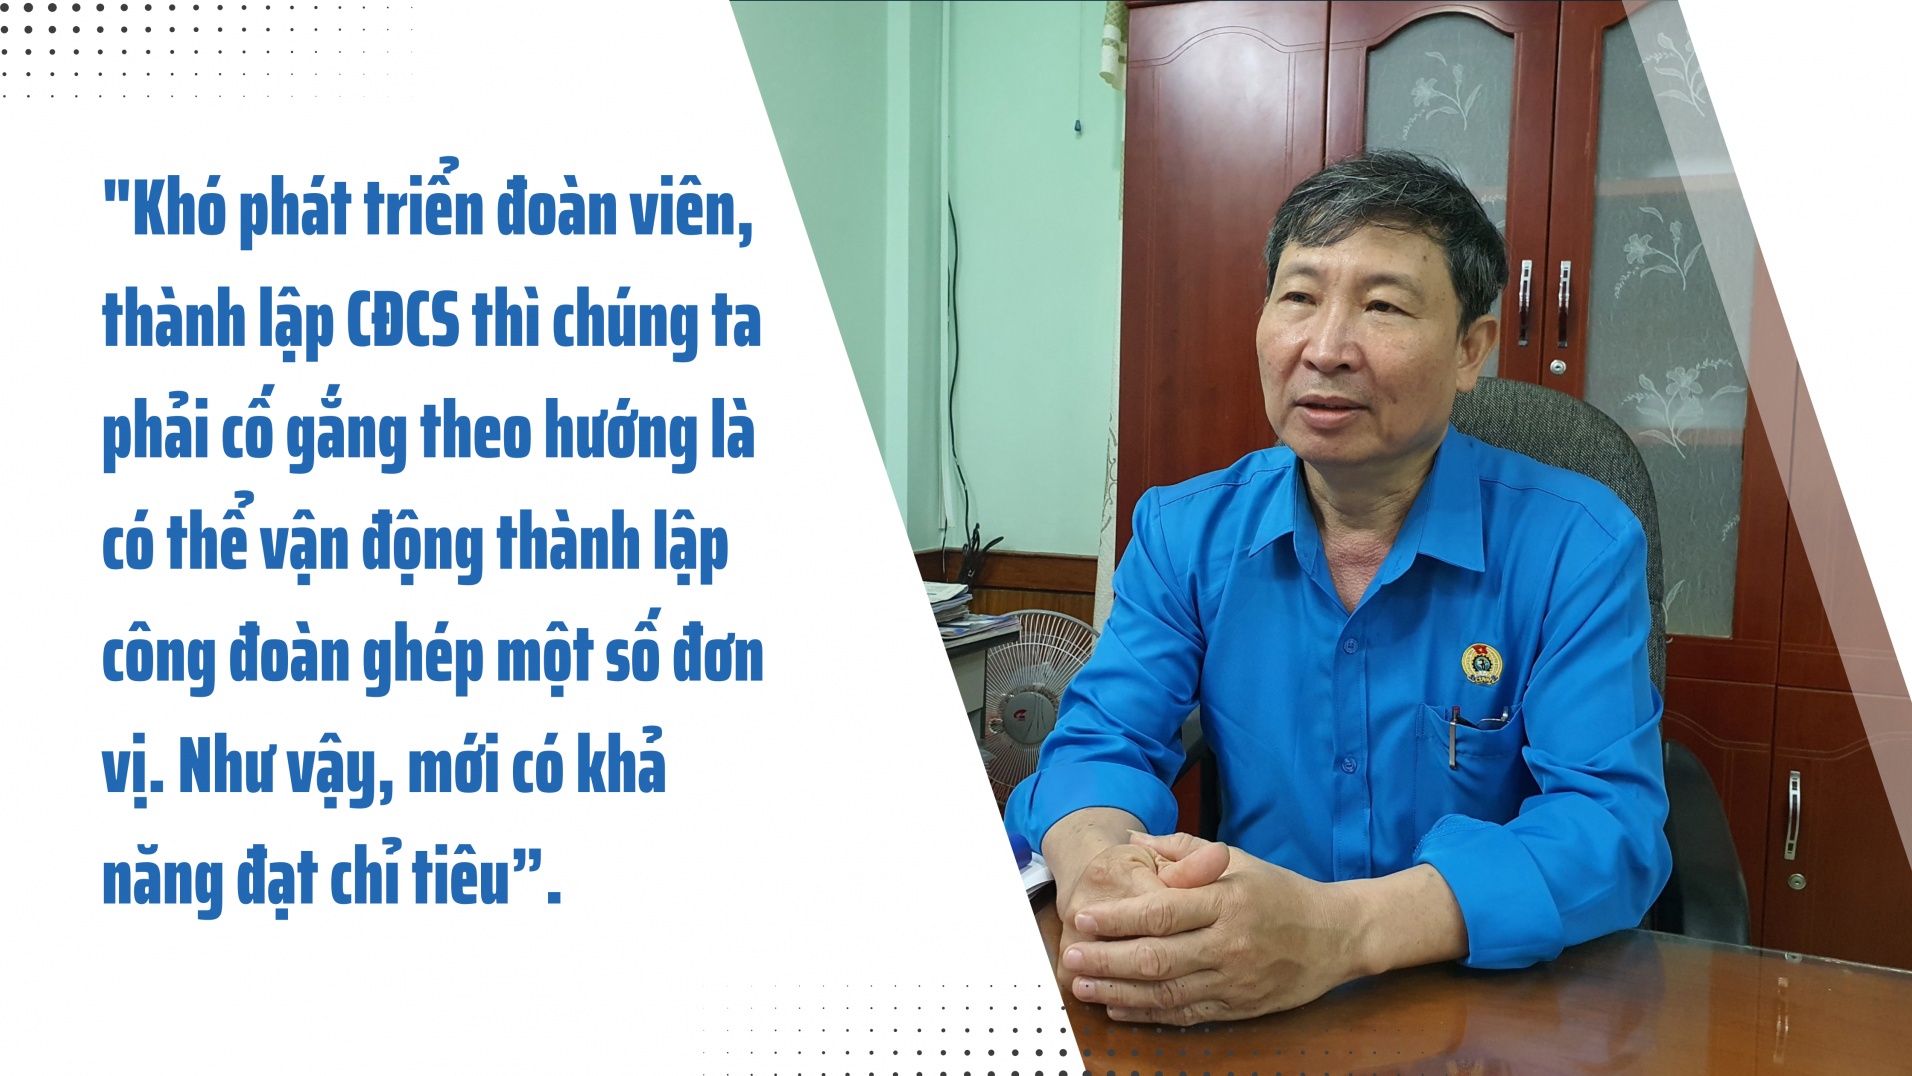 Phú Yên: Nỗ lực phát triển đoàn viên, thành lập công đoàn cơ sở